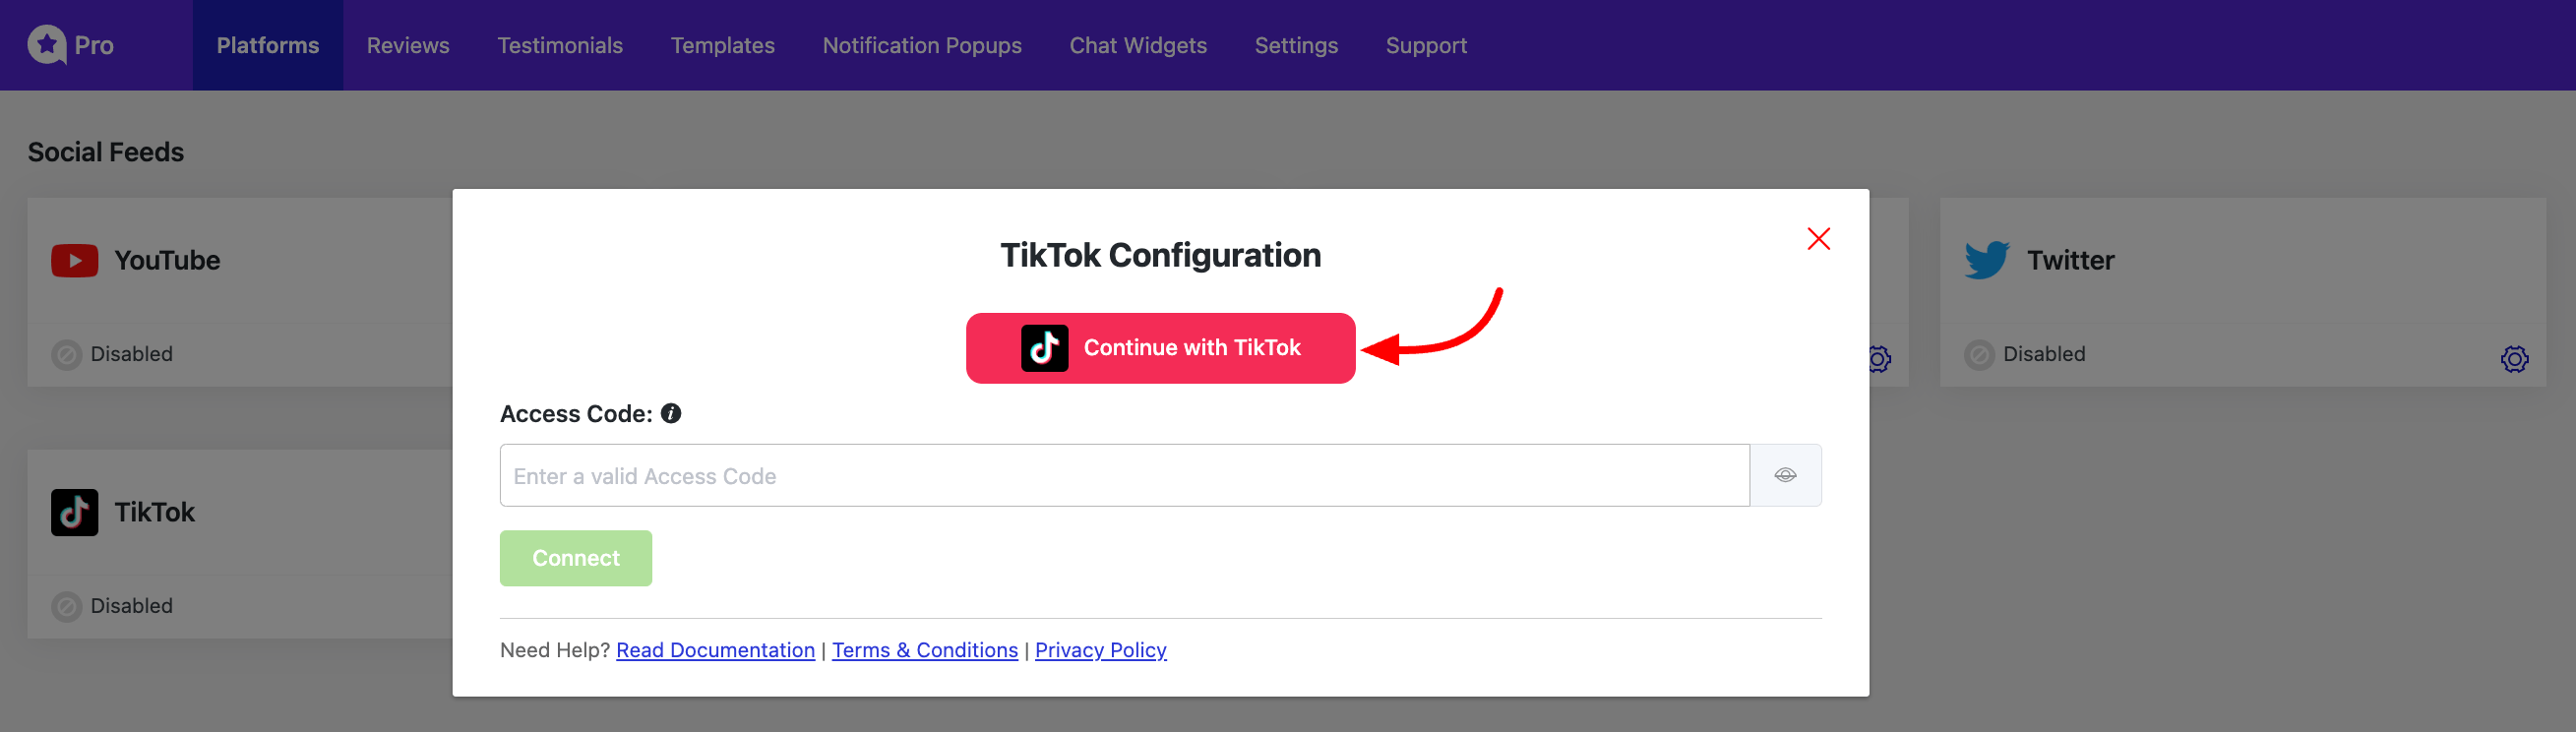 TikTok Configure Access Code